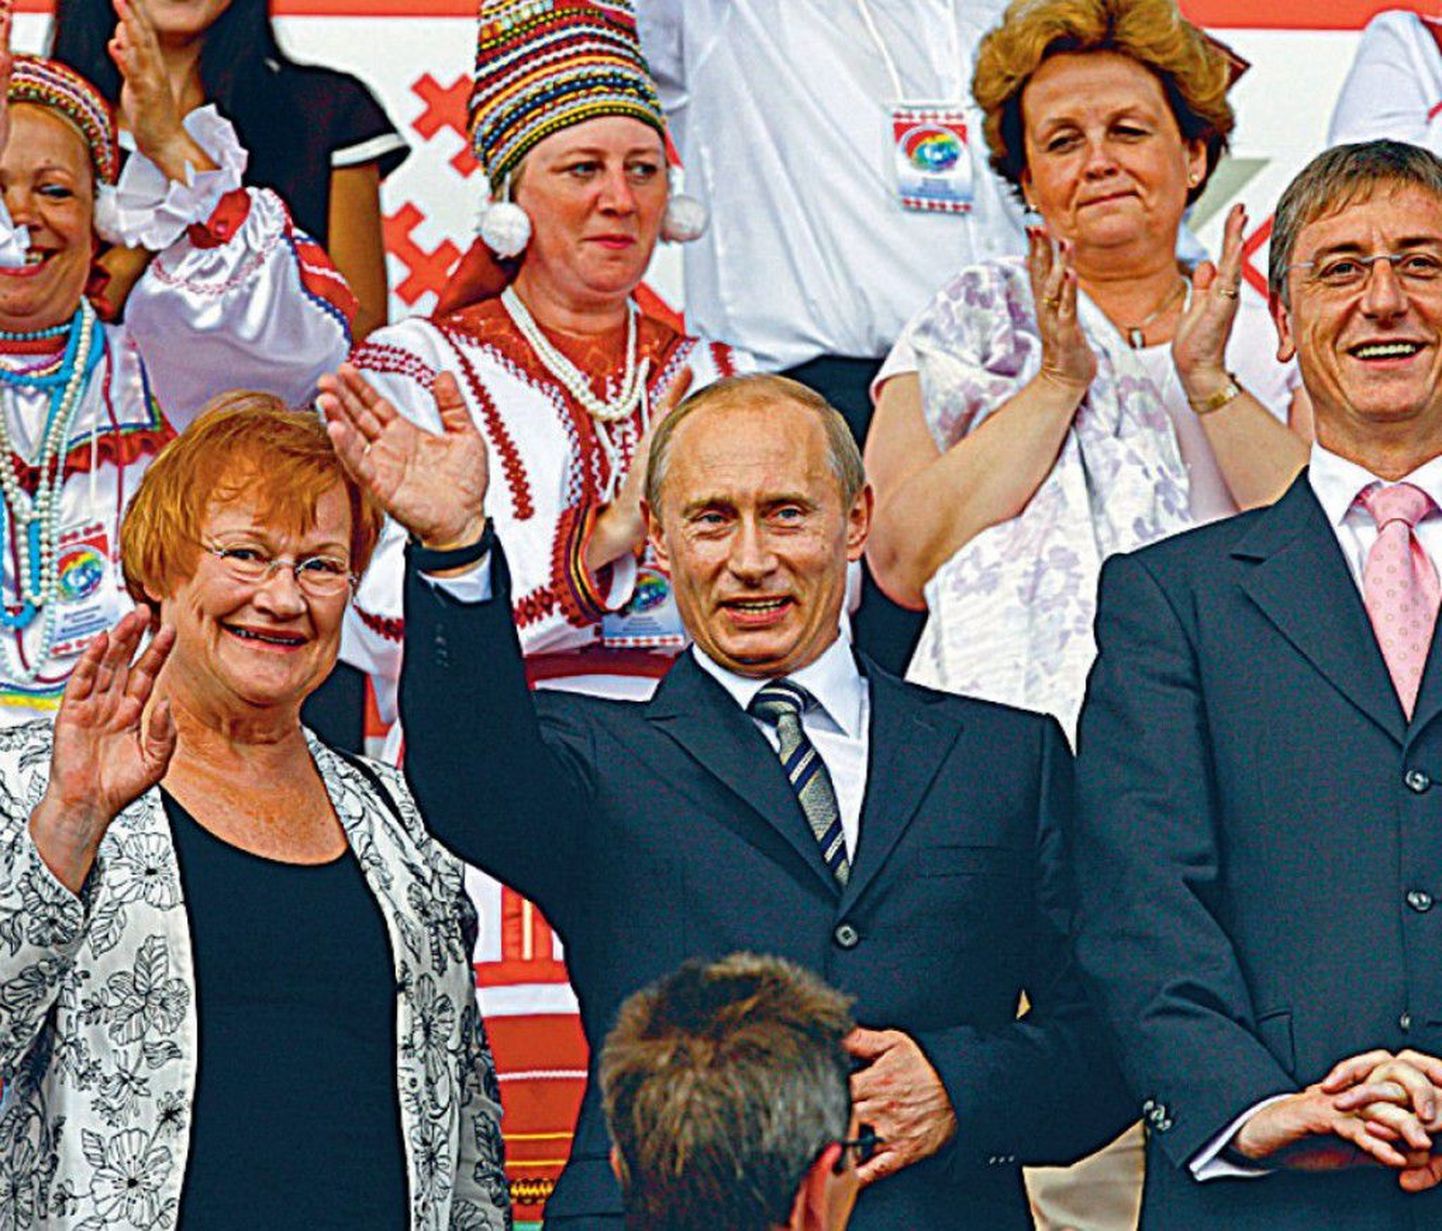 Владимир Путин и Тарья Халонен на финно-угорском фестивале в Саранске. Дискриминируют